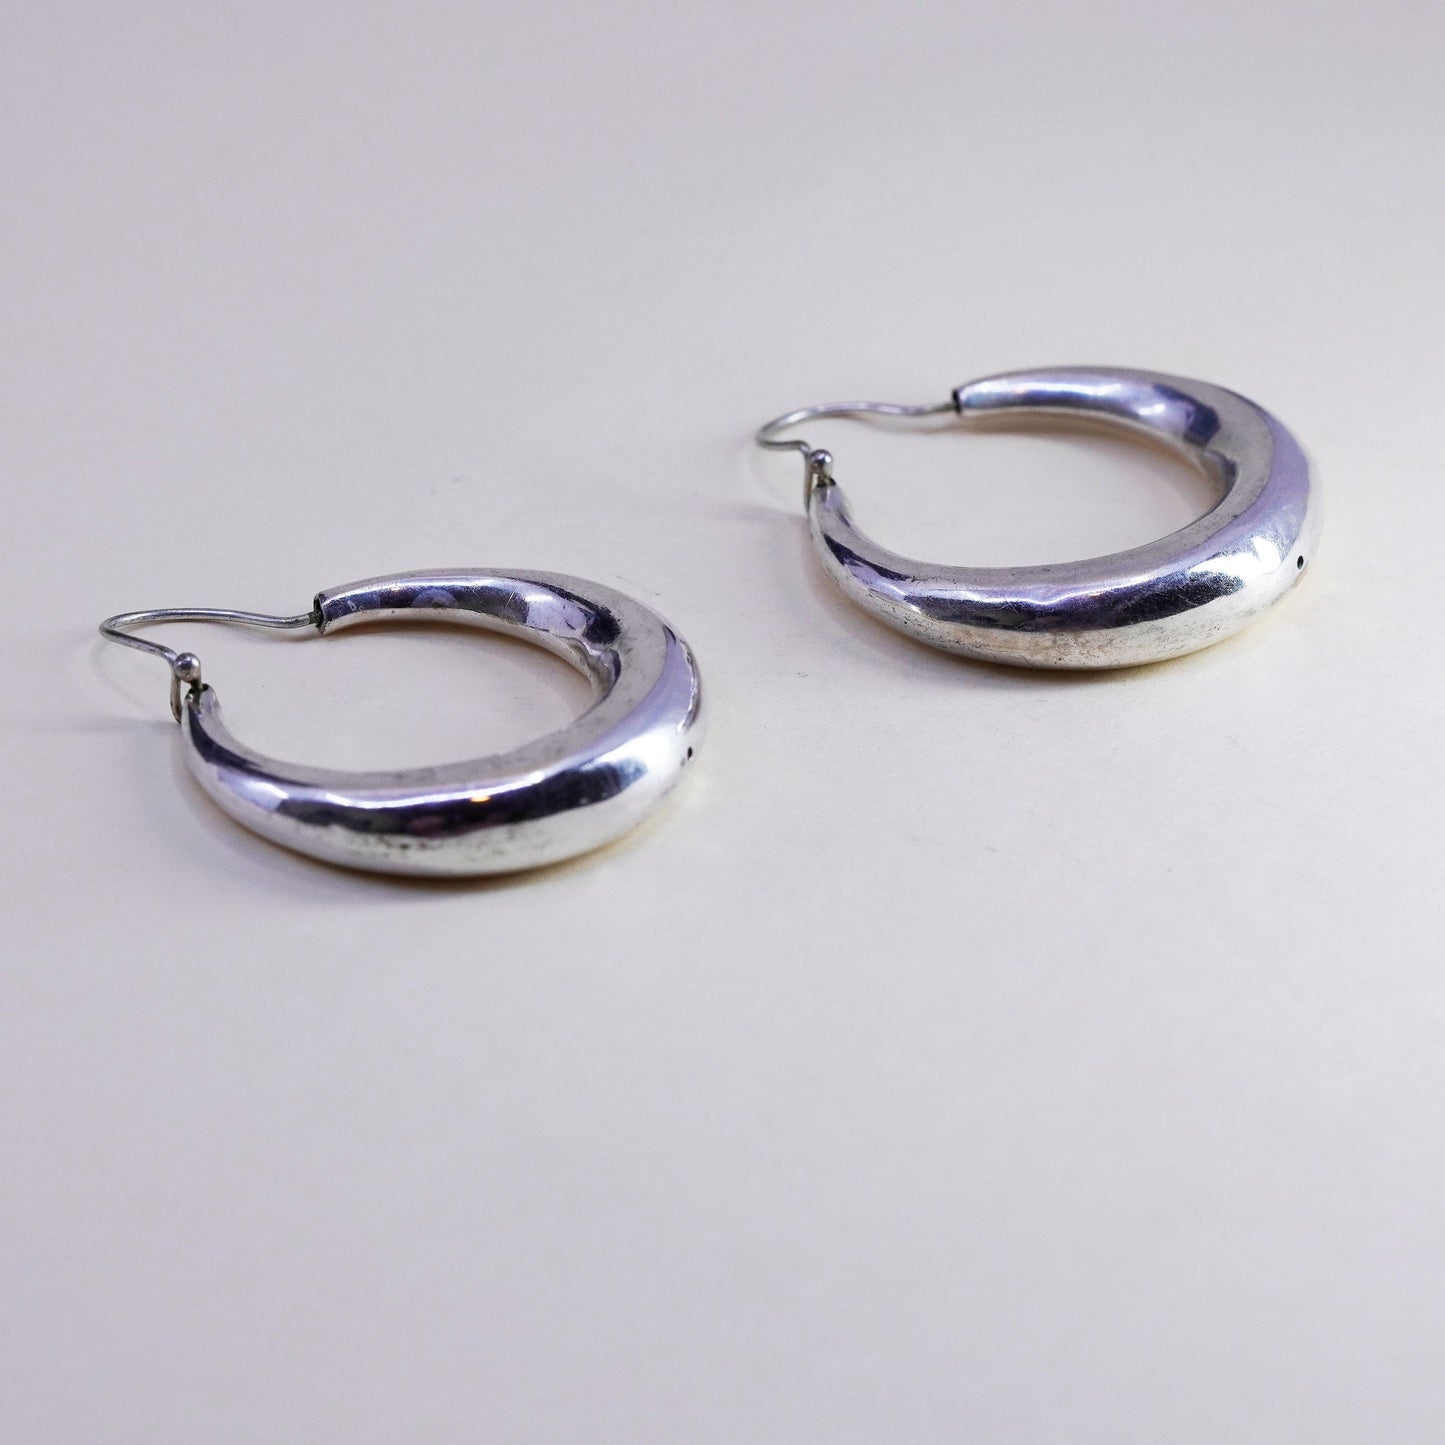 1.75” sterling silver handmade earrings, fashion minimalist primitive hoops